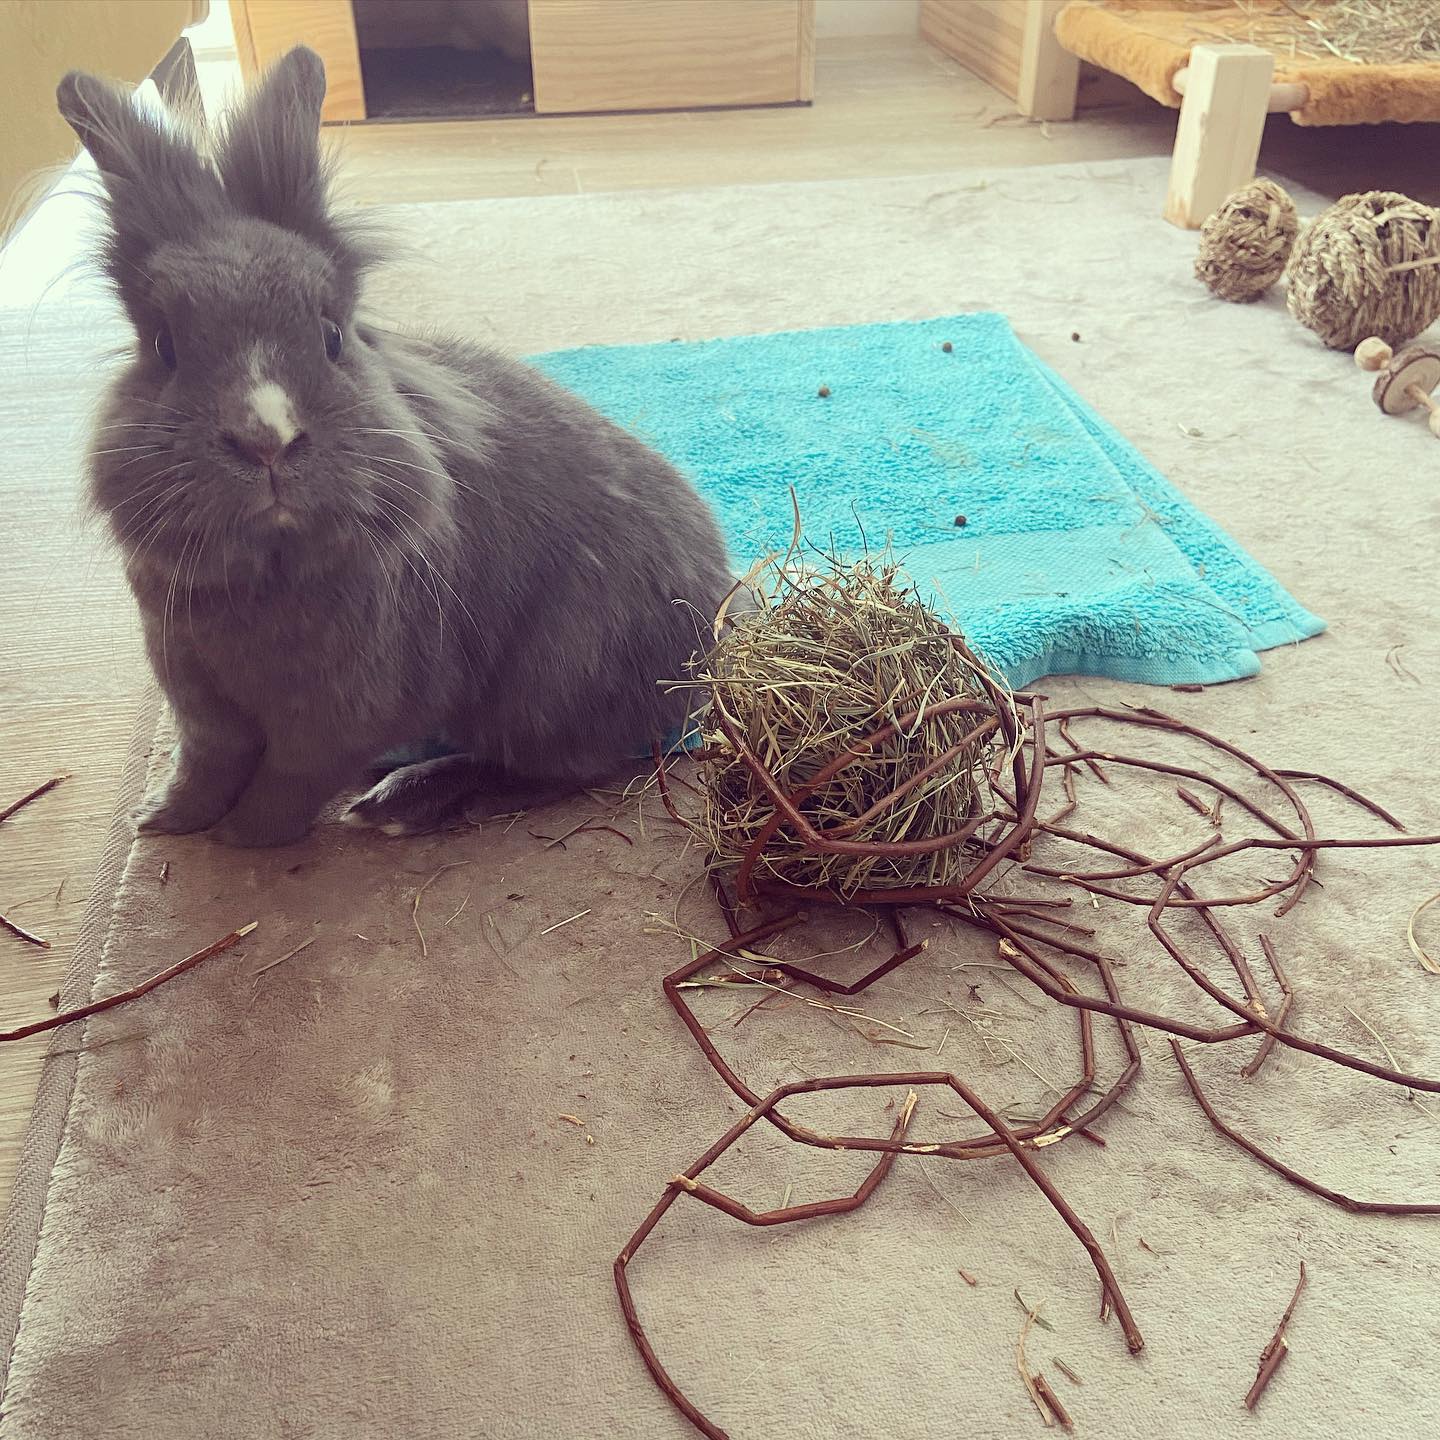 Une balle à ronger qui n’aura pas survécu 24h… 😒

💬Devinez qui est le ou la coupable ?
Flocky ou Gribouille ? 🐰

👉Un indice : Ne jamais se fier aux apparences 😉

#devinette #jeu #balle #coupable #lapin #bunny #fabunny #bunnylover #bunnies #rabbitlife #rabbits #lapinstagram #rabbitstagram #bunnymom #rabbitlove